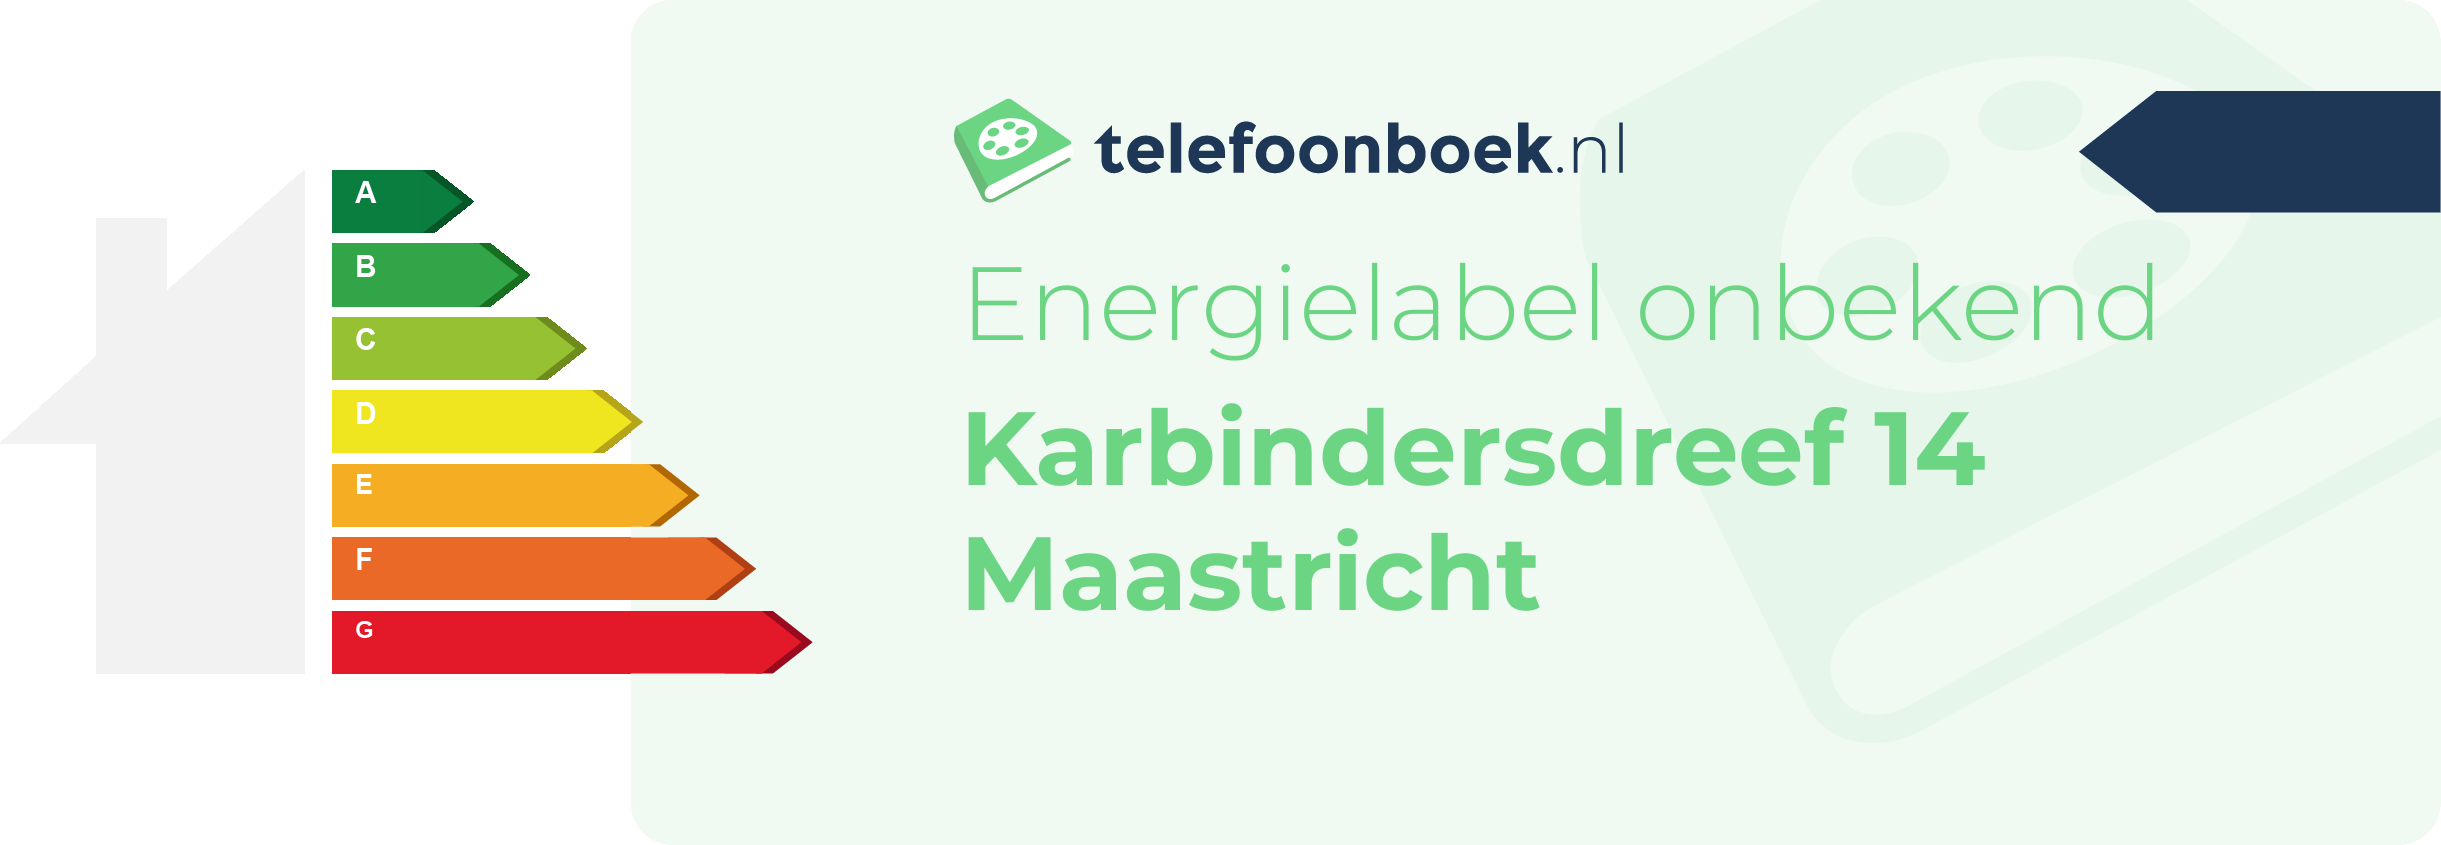 Energielabel Karbindersdreef 14 Maastricht